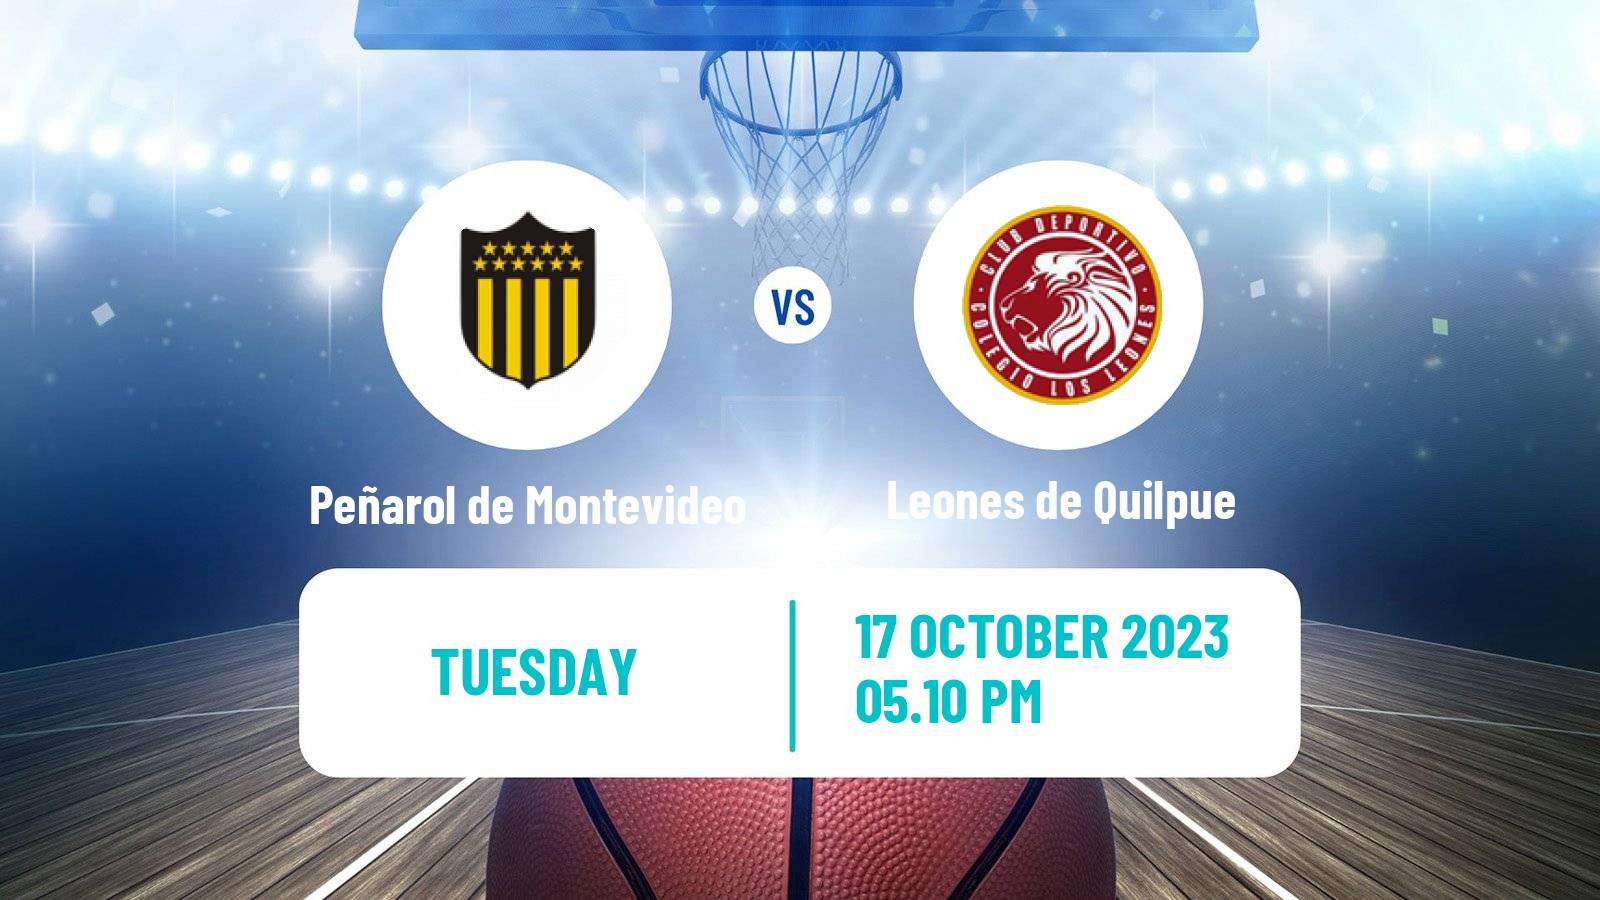 Basketball Basketball South American League Peñarol de Montevideo - Leones de Quilpue